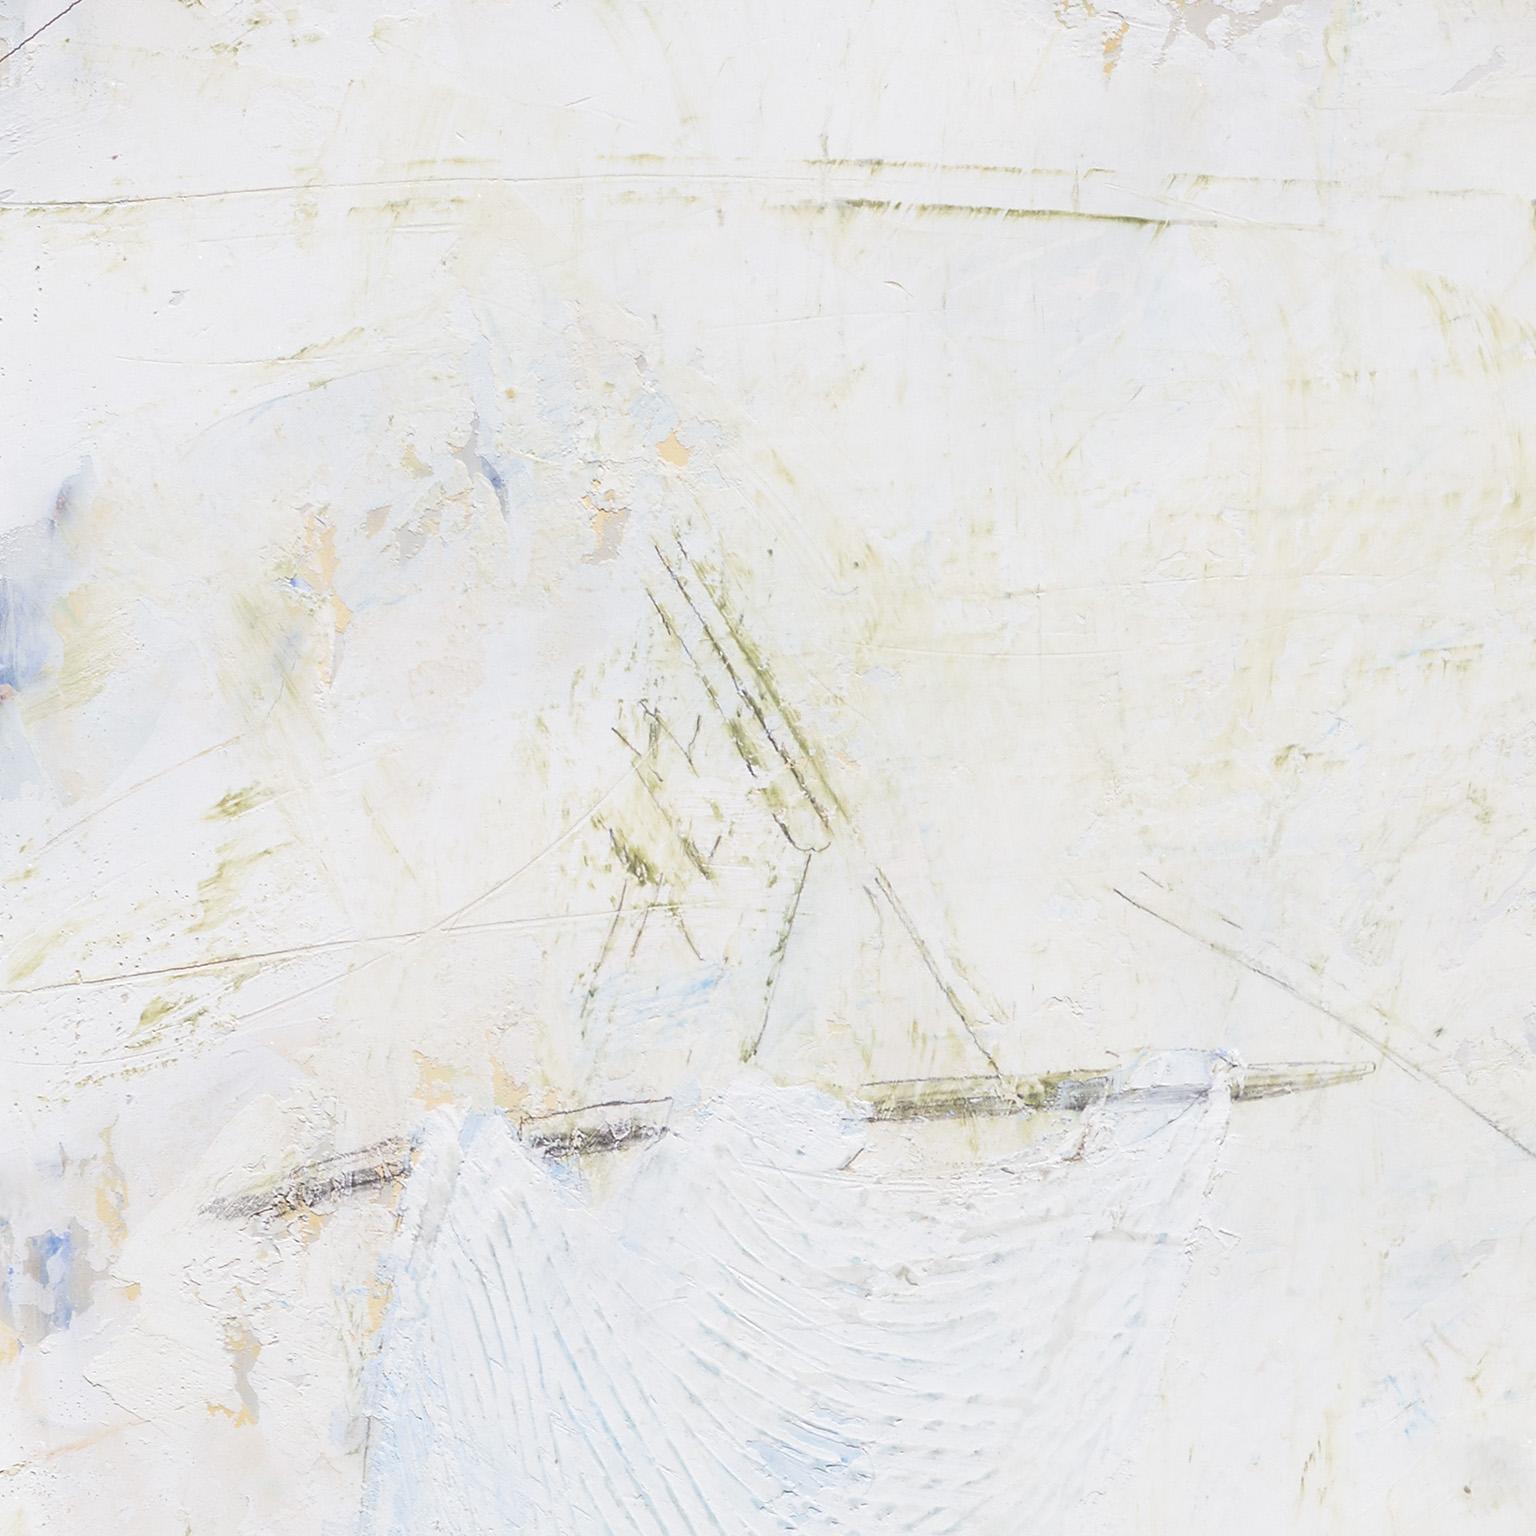 Trace and Sway – Abstraktes, quadratisches Werk mit kleinen Graffiti auf weißem Gips (Grau), Figurative Painting, von Gregory Kitterle